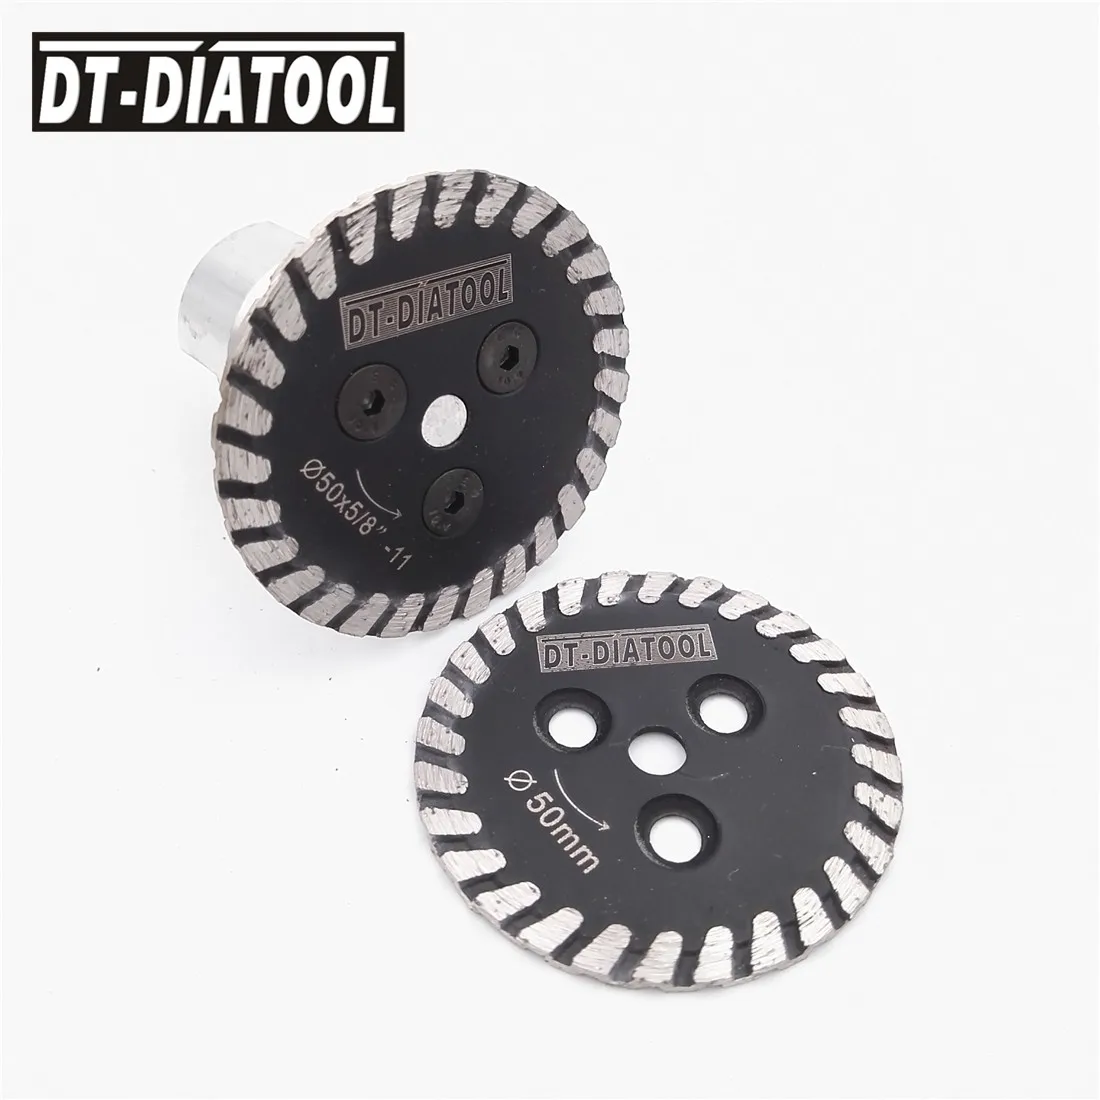 DT-DIATOOL 1pc Karšto Paspaudus Mini Diamond Graviravimas pjauti Su Nuimamu M14 arba 5/8